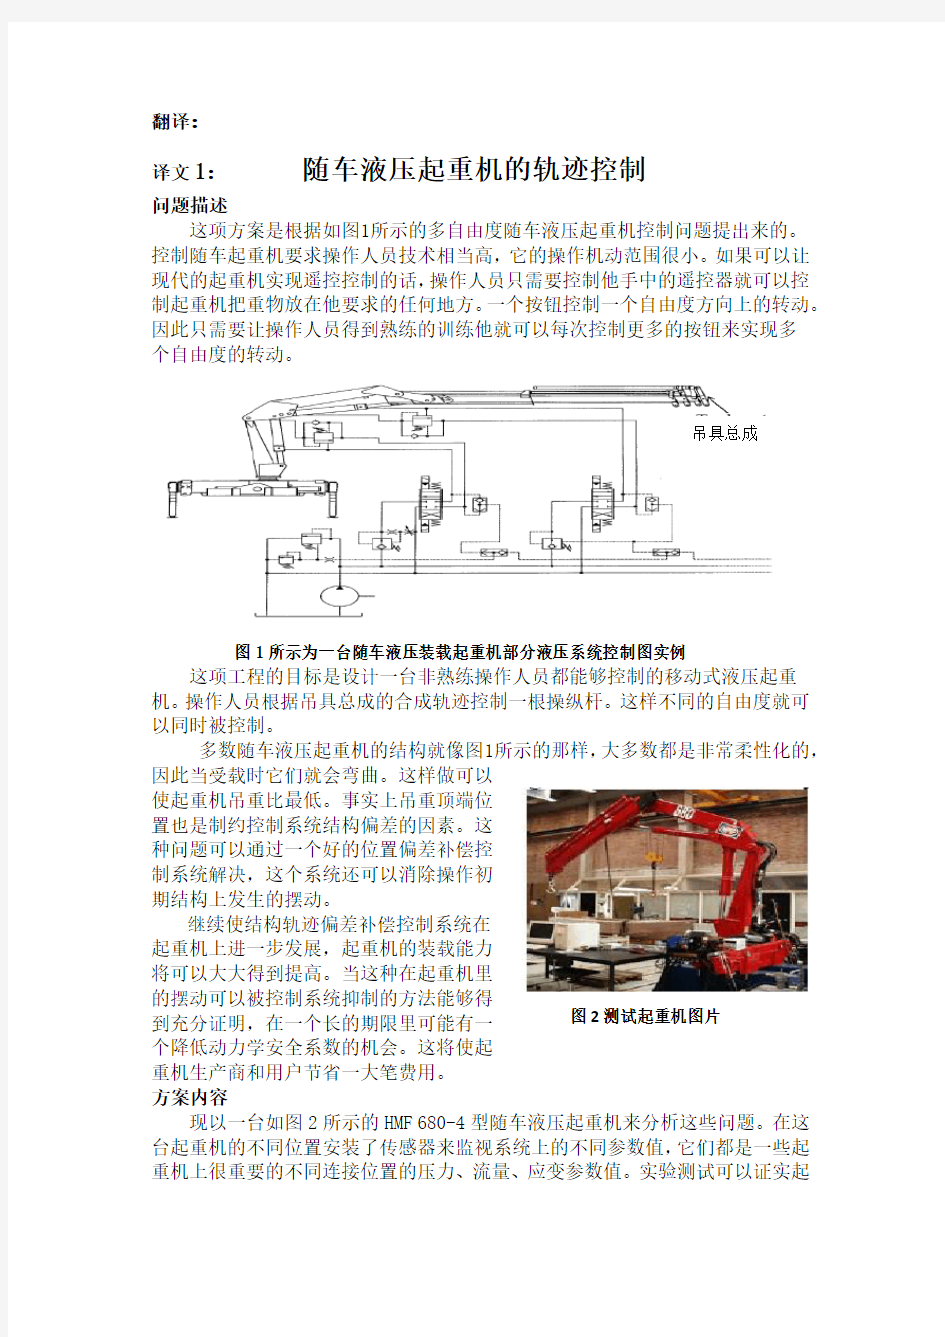 机械毕业设计英文外文翻译476随车液压起重机的轨迹控制